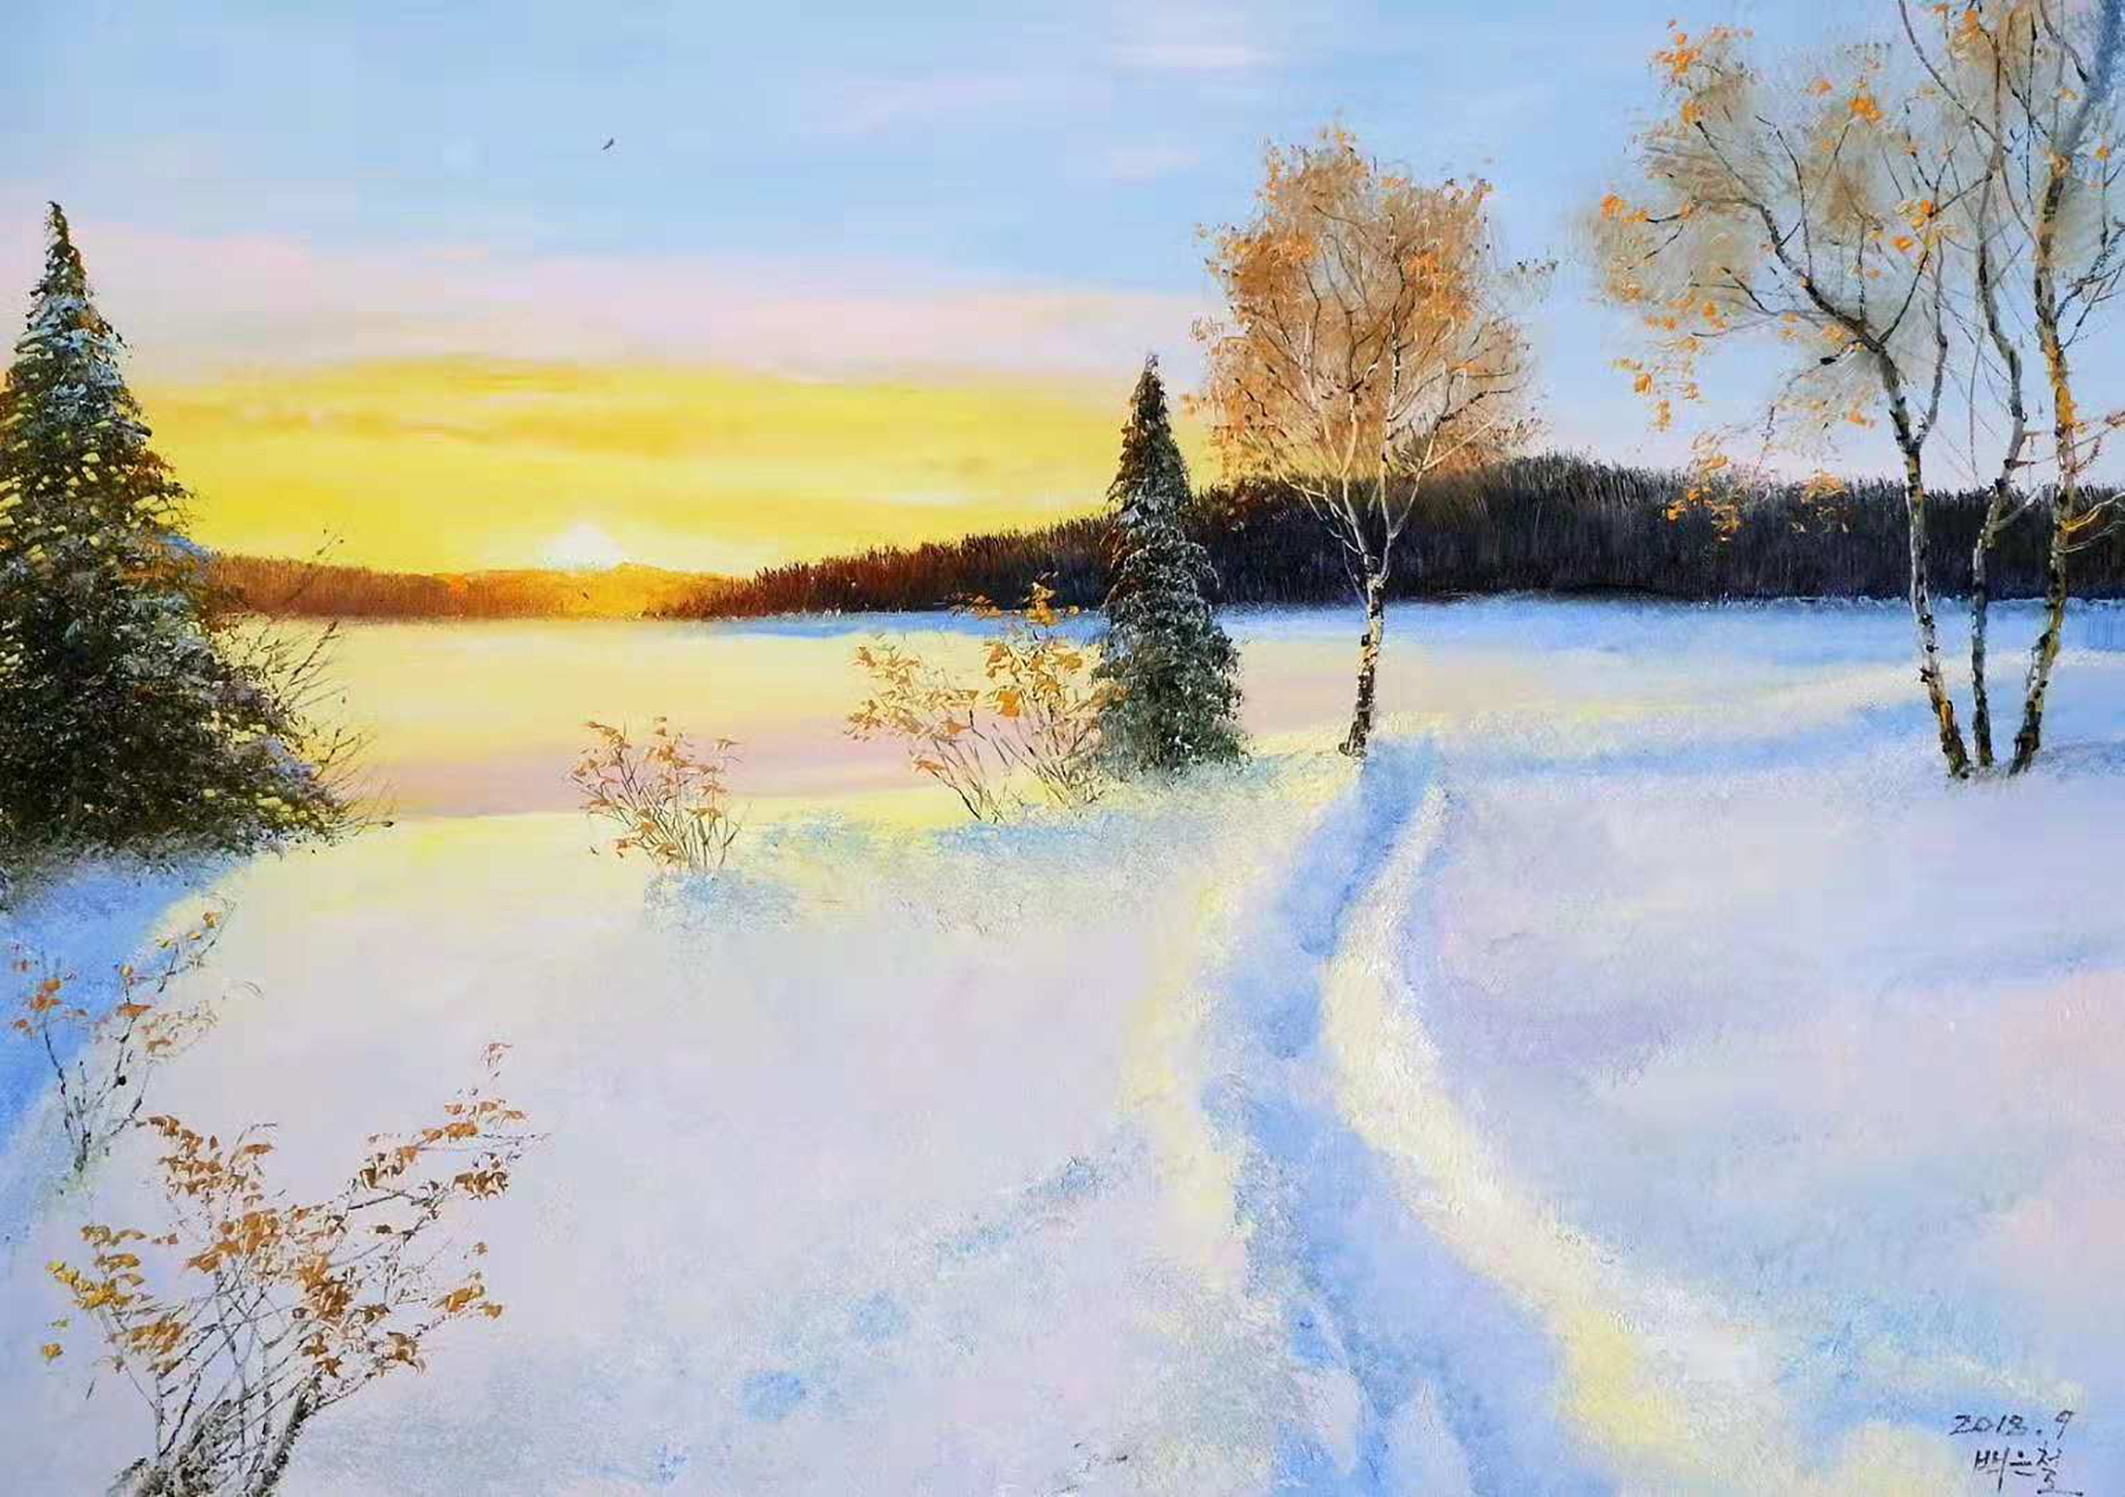 油画欣赏:画家笔下的冬天,冰雪风景是这样的美(二)